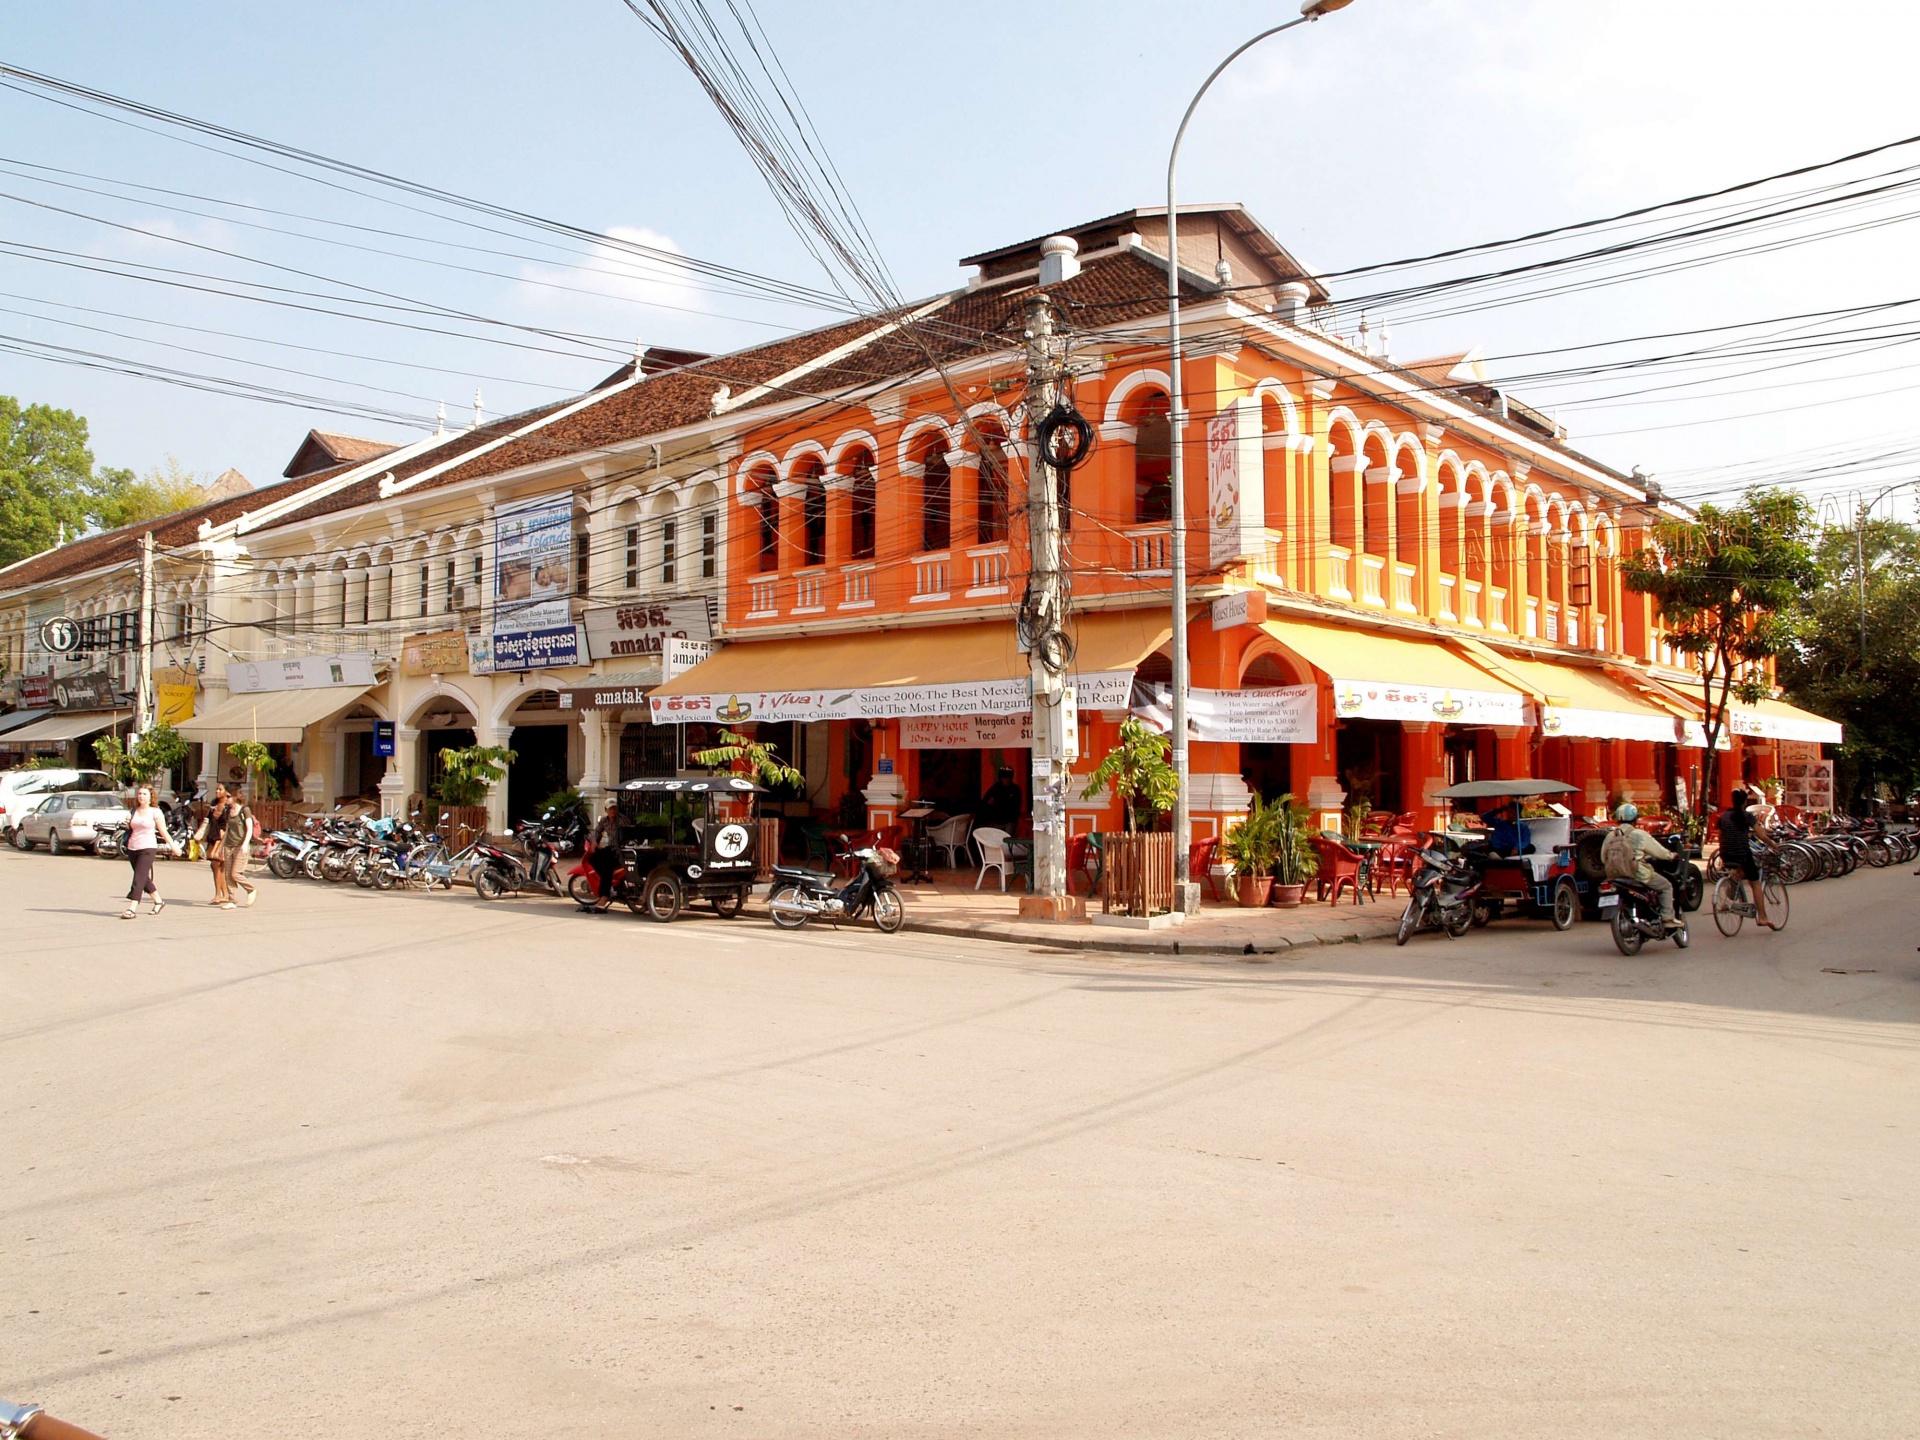 Siem Reap markt Cambodja